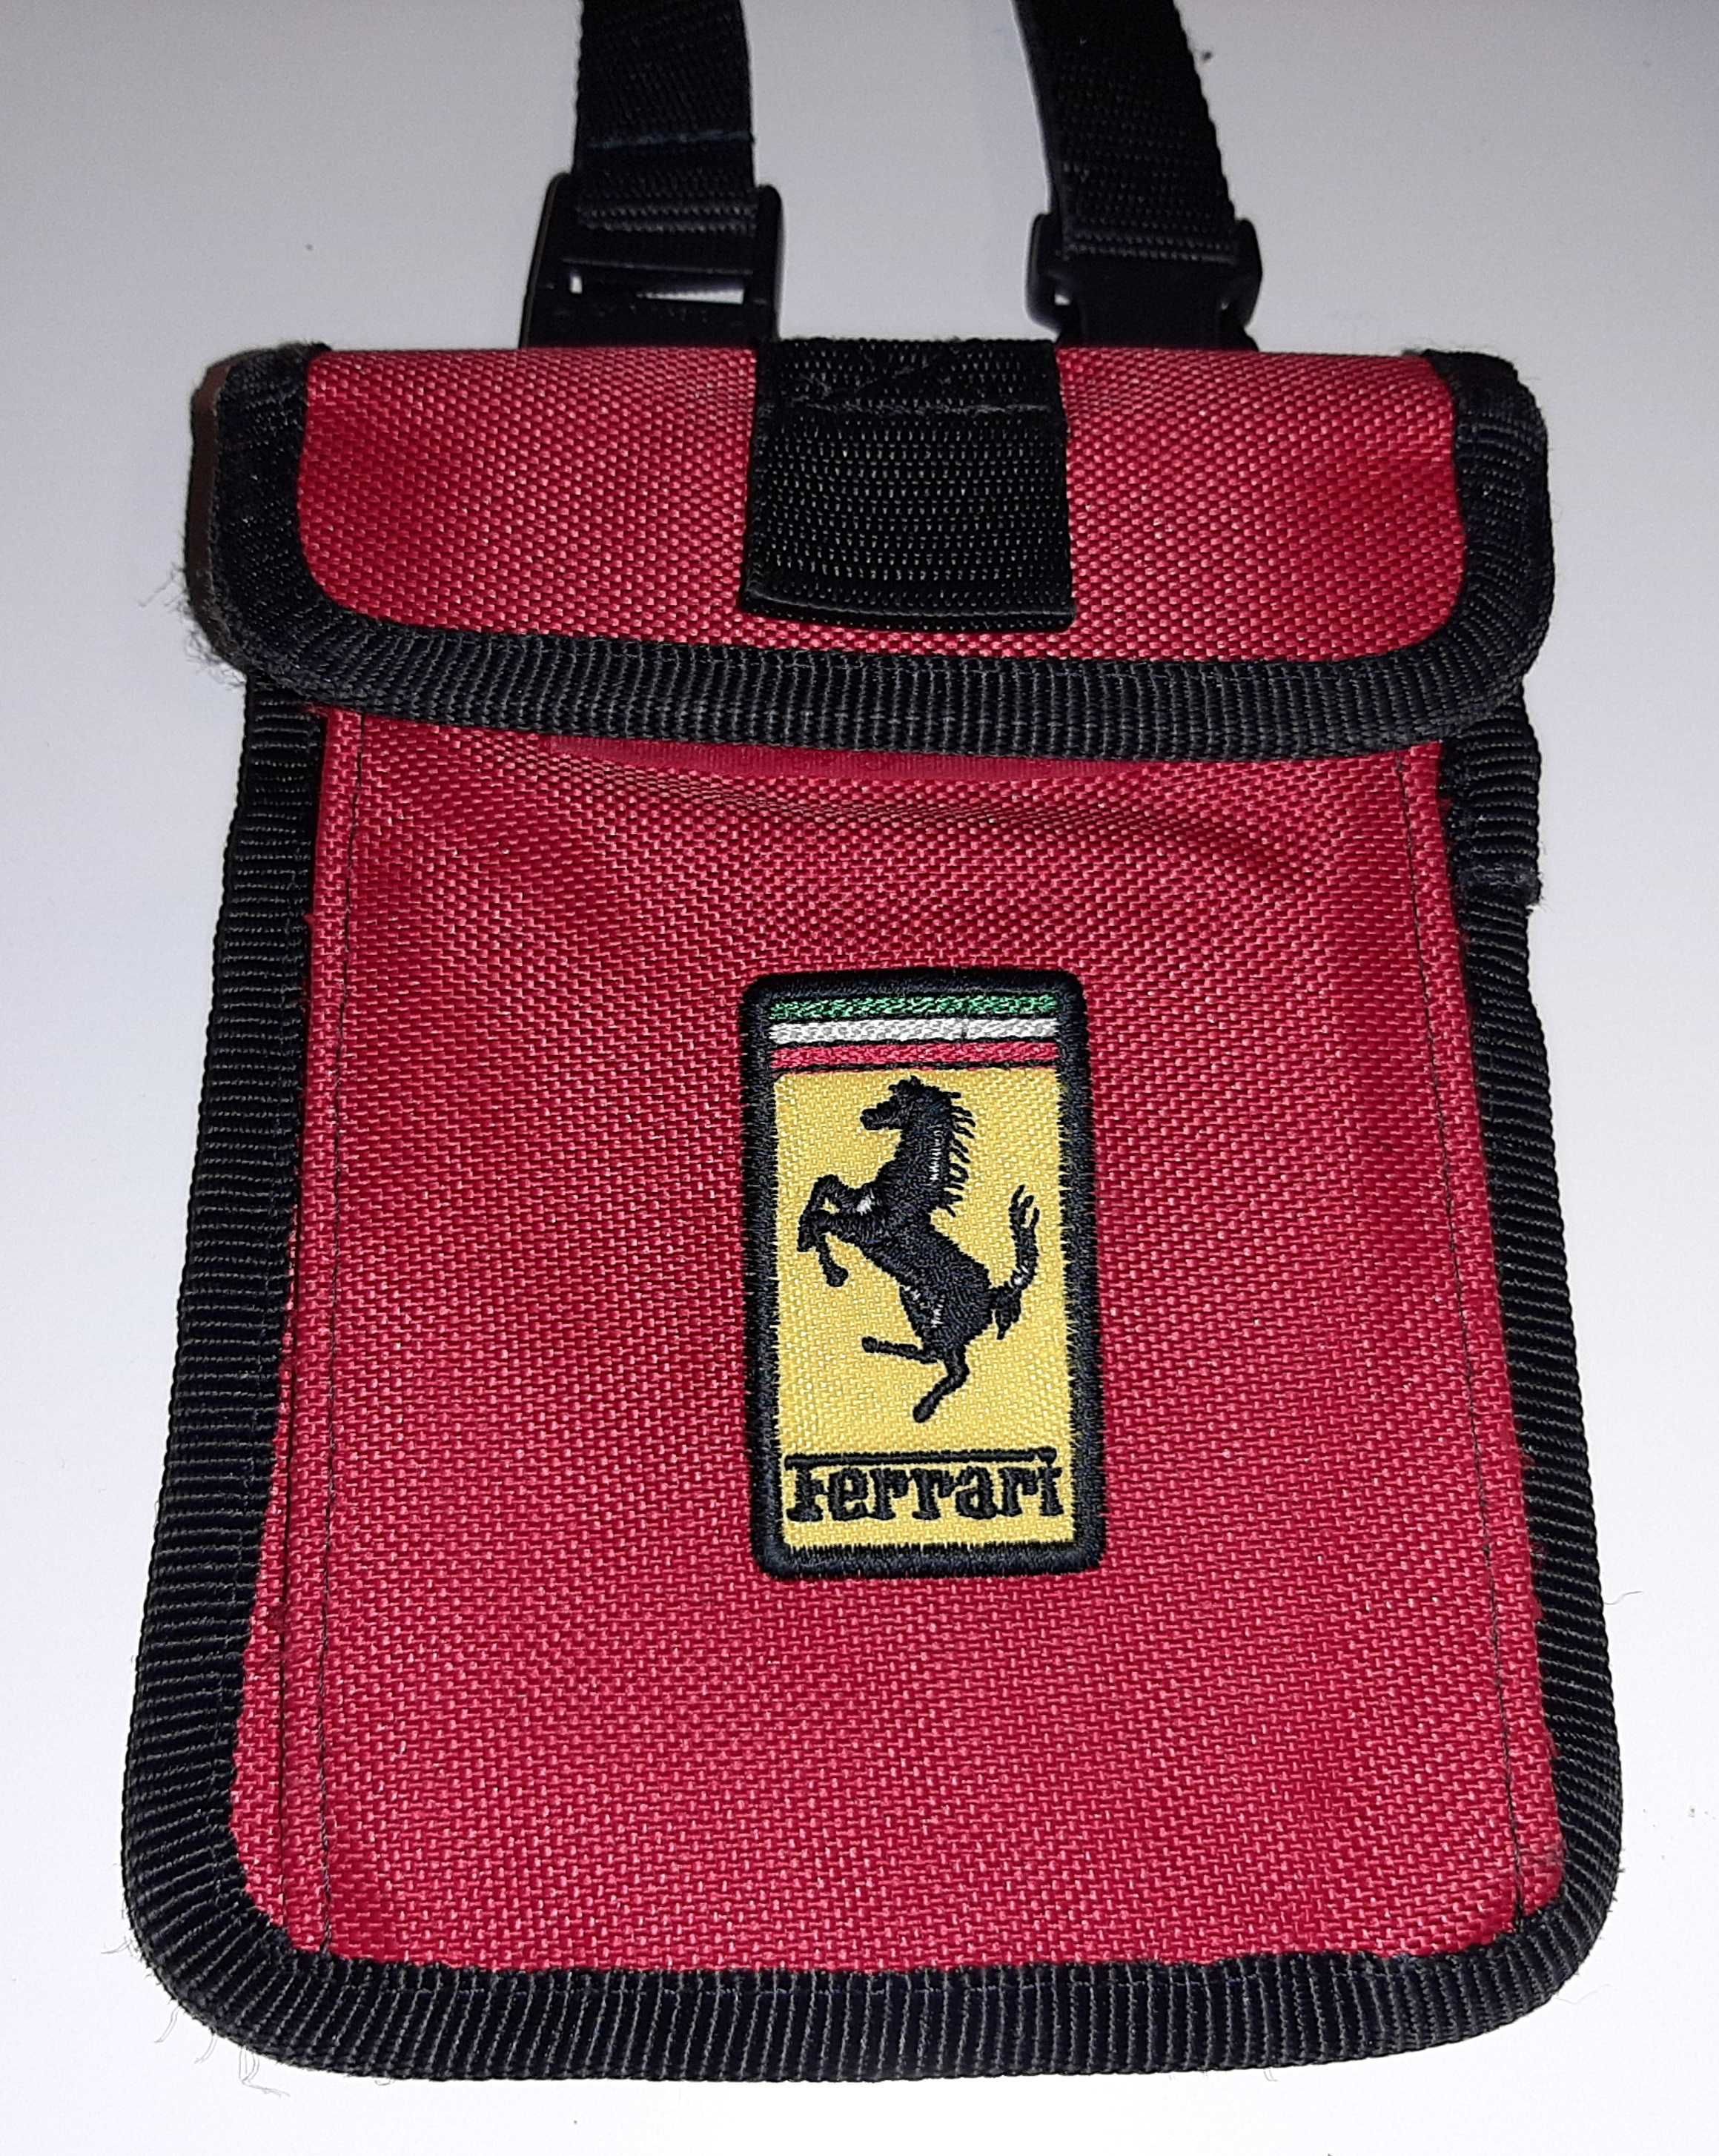 Bolsa Ferrari produto original Venteira • OLX Portugal